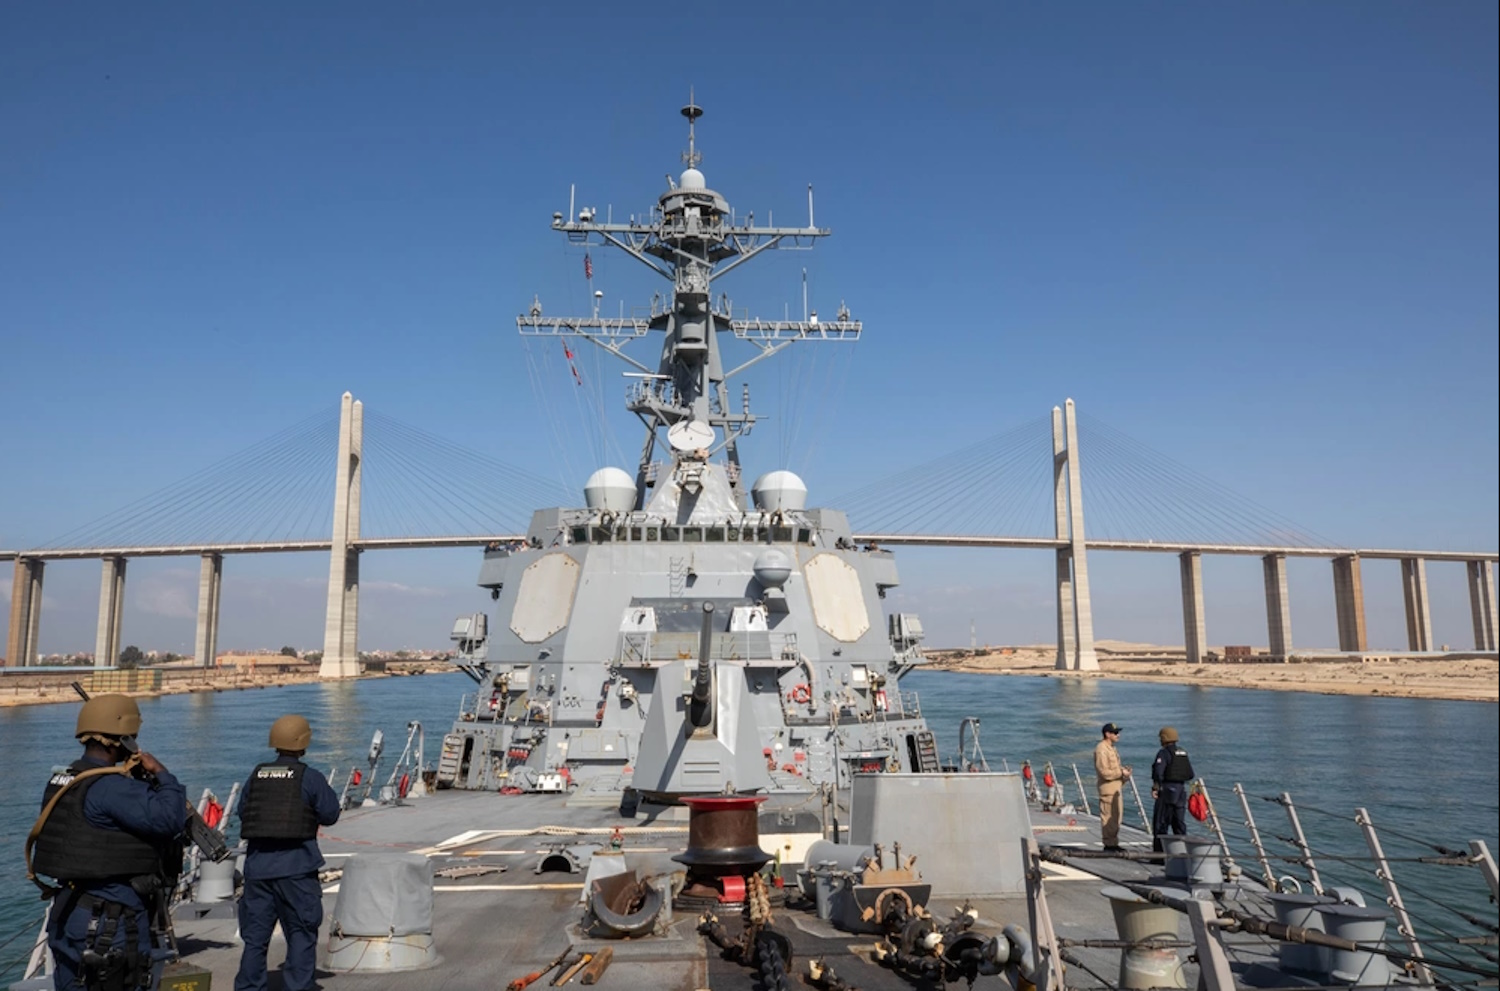 Μέση Ανατολή: Το USS Florida είναι το πυρηνοκίνητο υποβρύχιο που αναπτύσσουν οι ΗΠΑ στην περιοχή